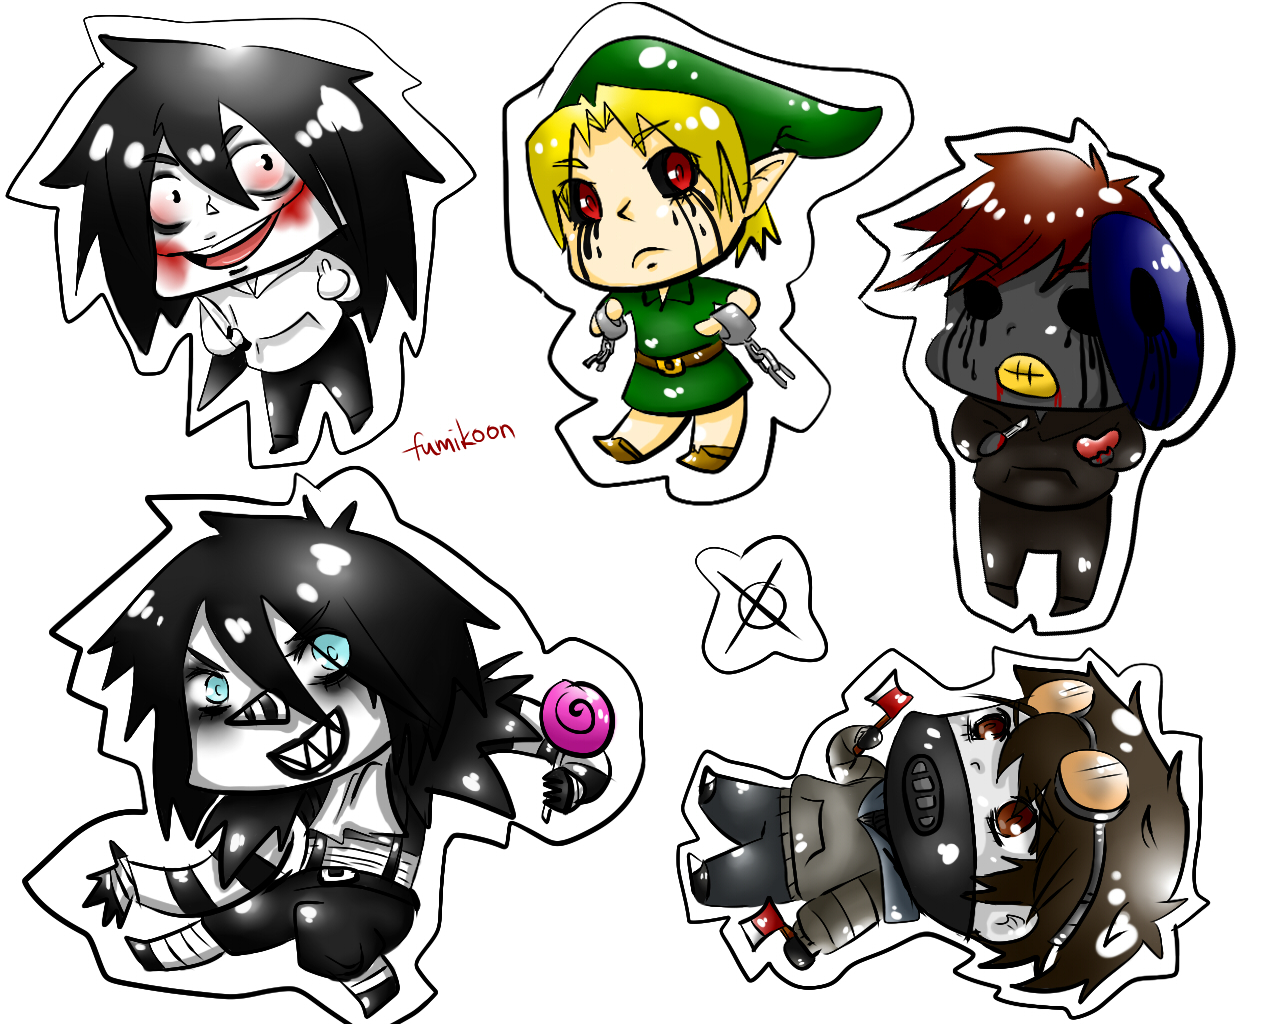 Creepypasta All Characters  Sticker by fantasmahappy